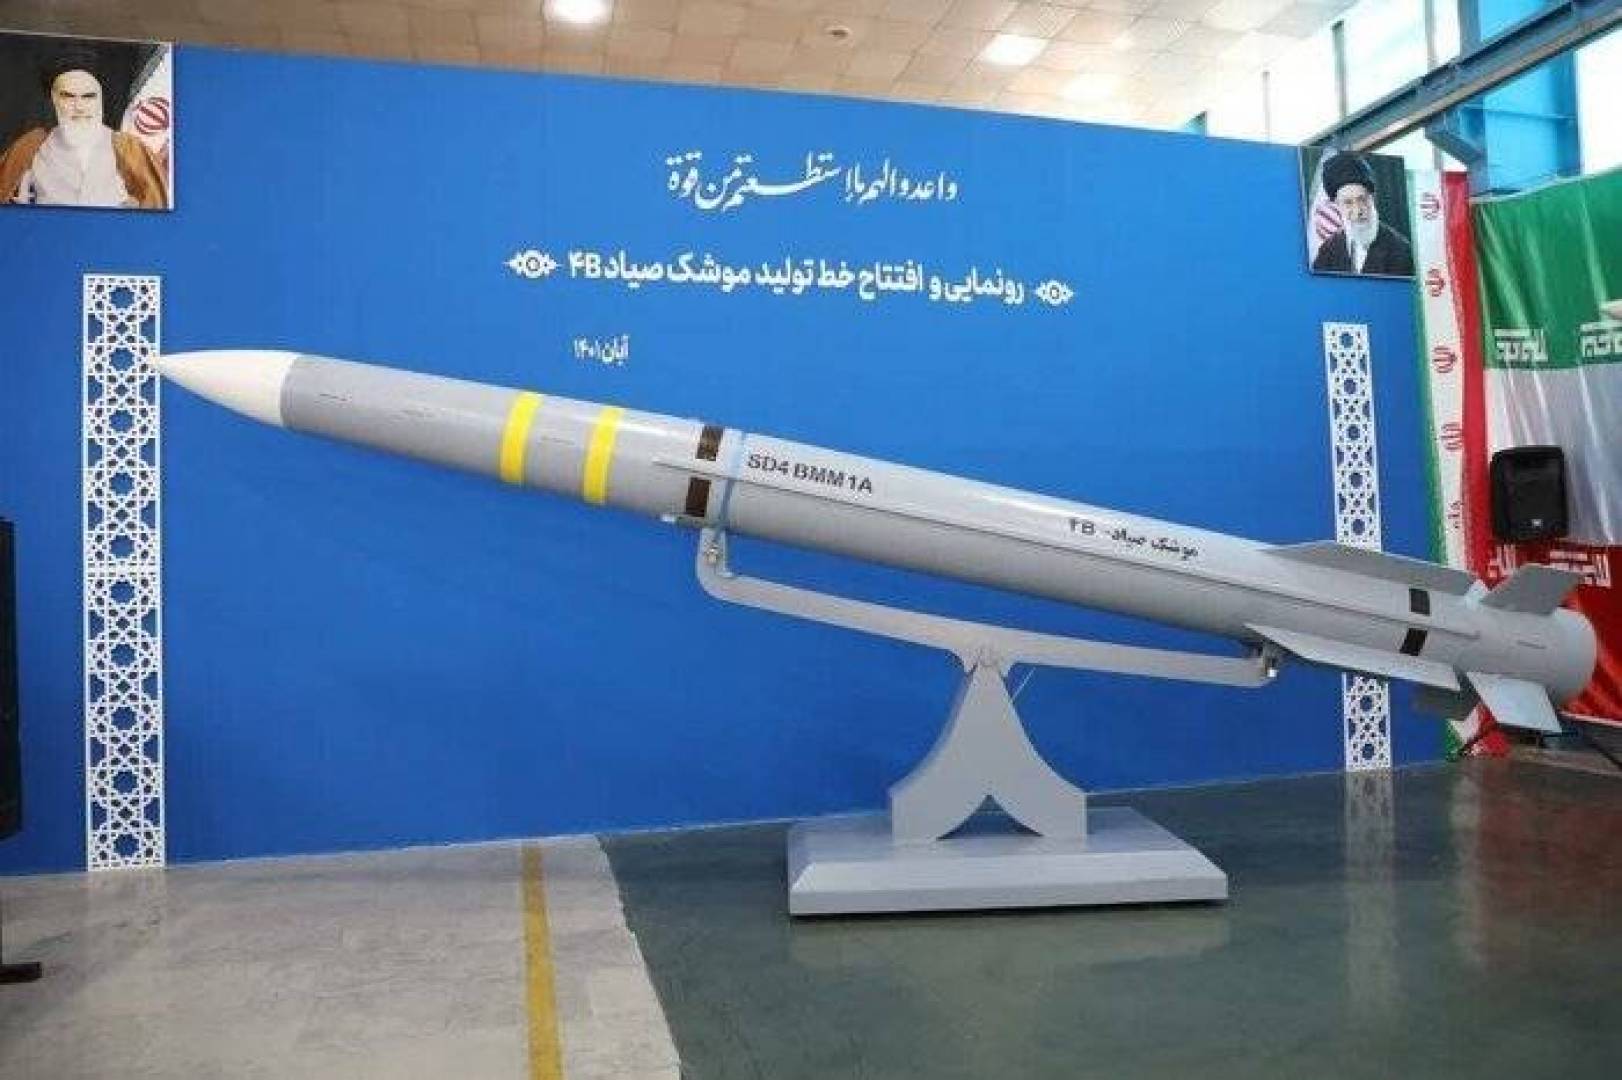 بالفيديو إيران تختبر منظومة الدفاع الصاروخي باور373 وصاروخ 